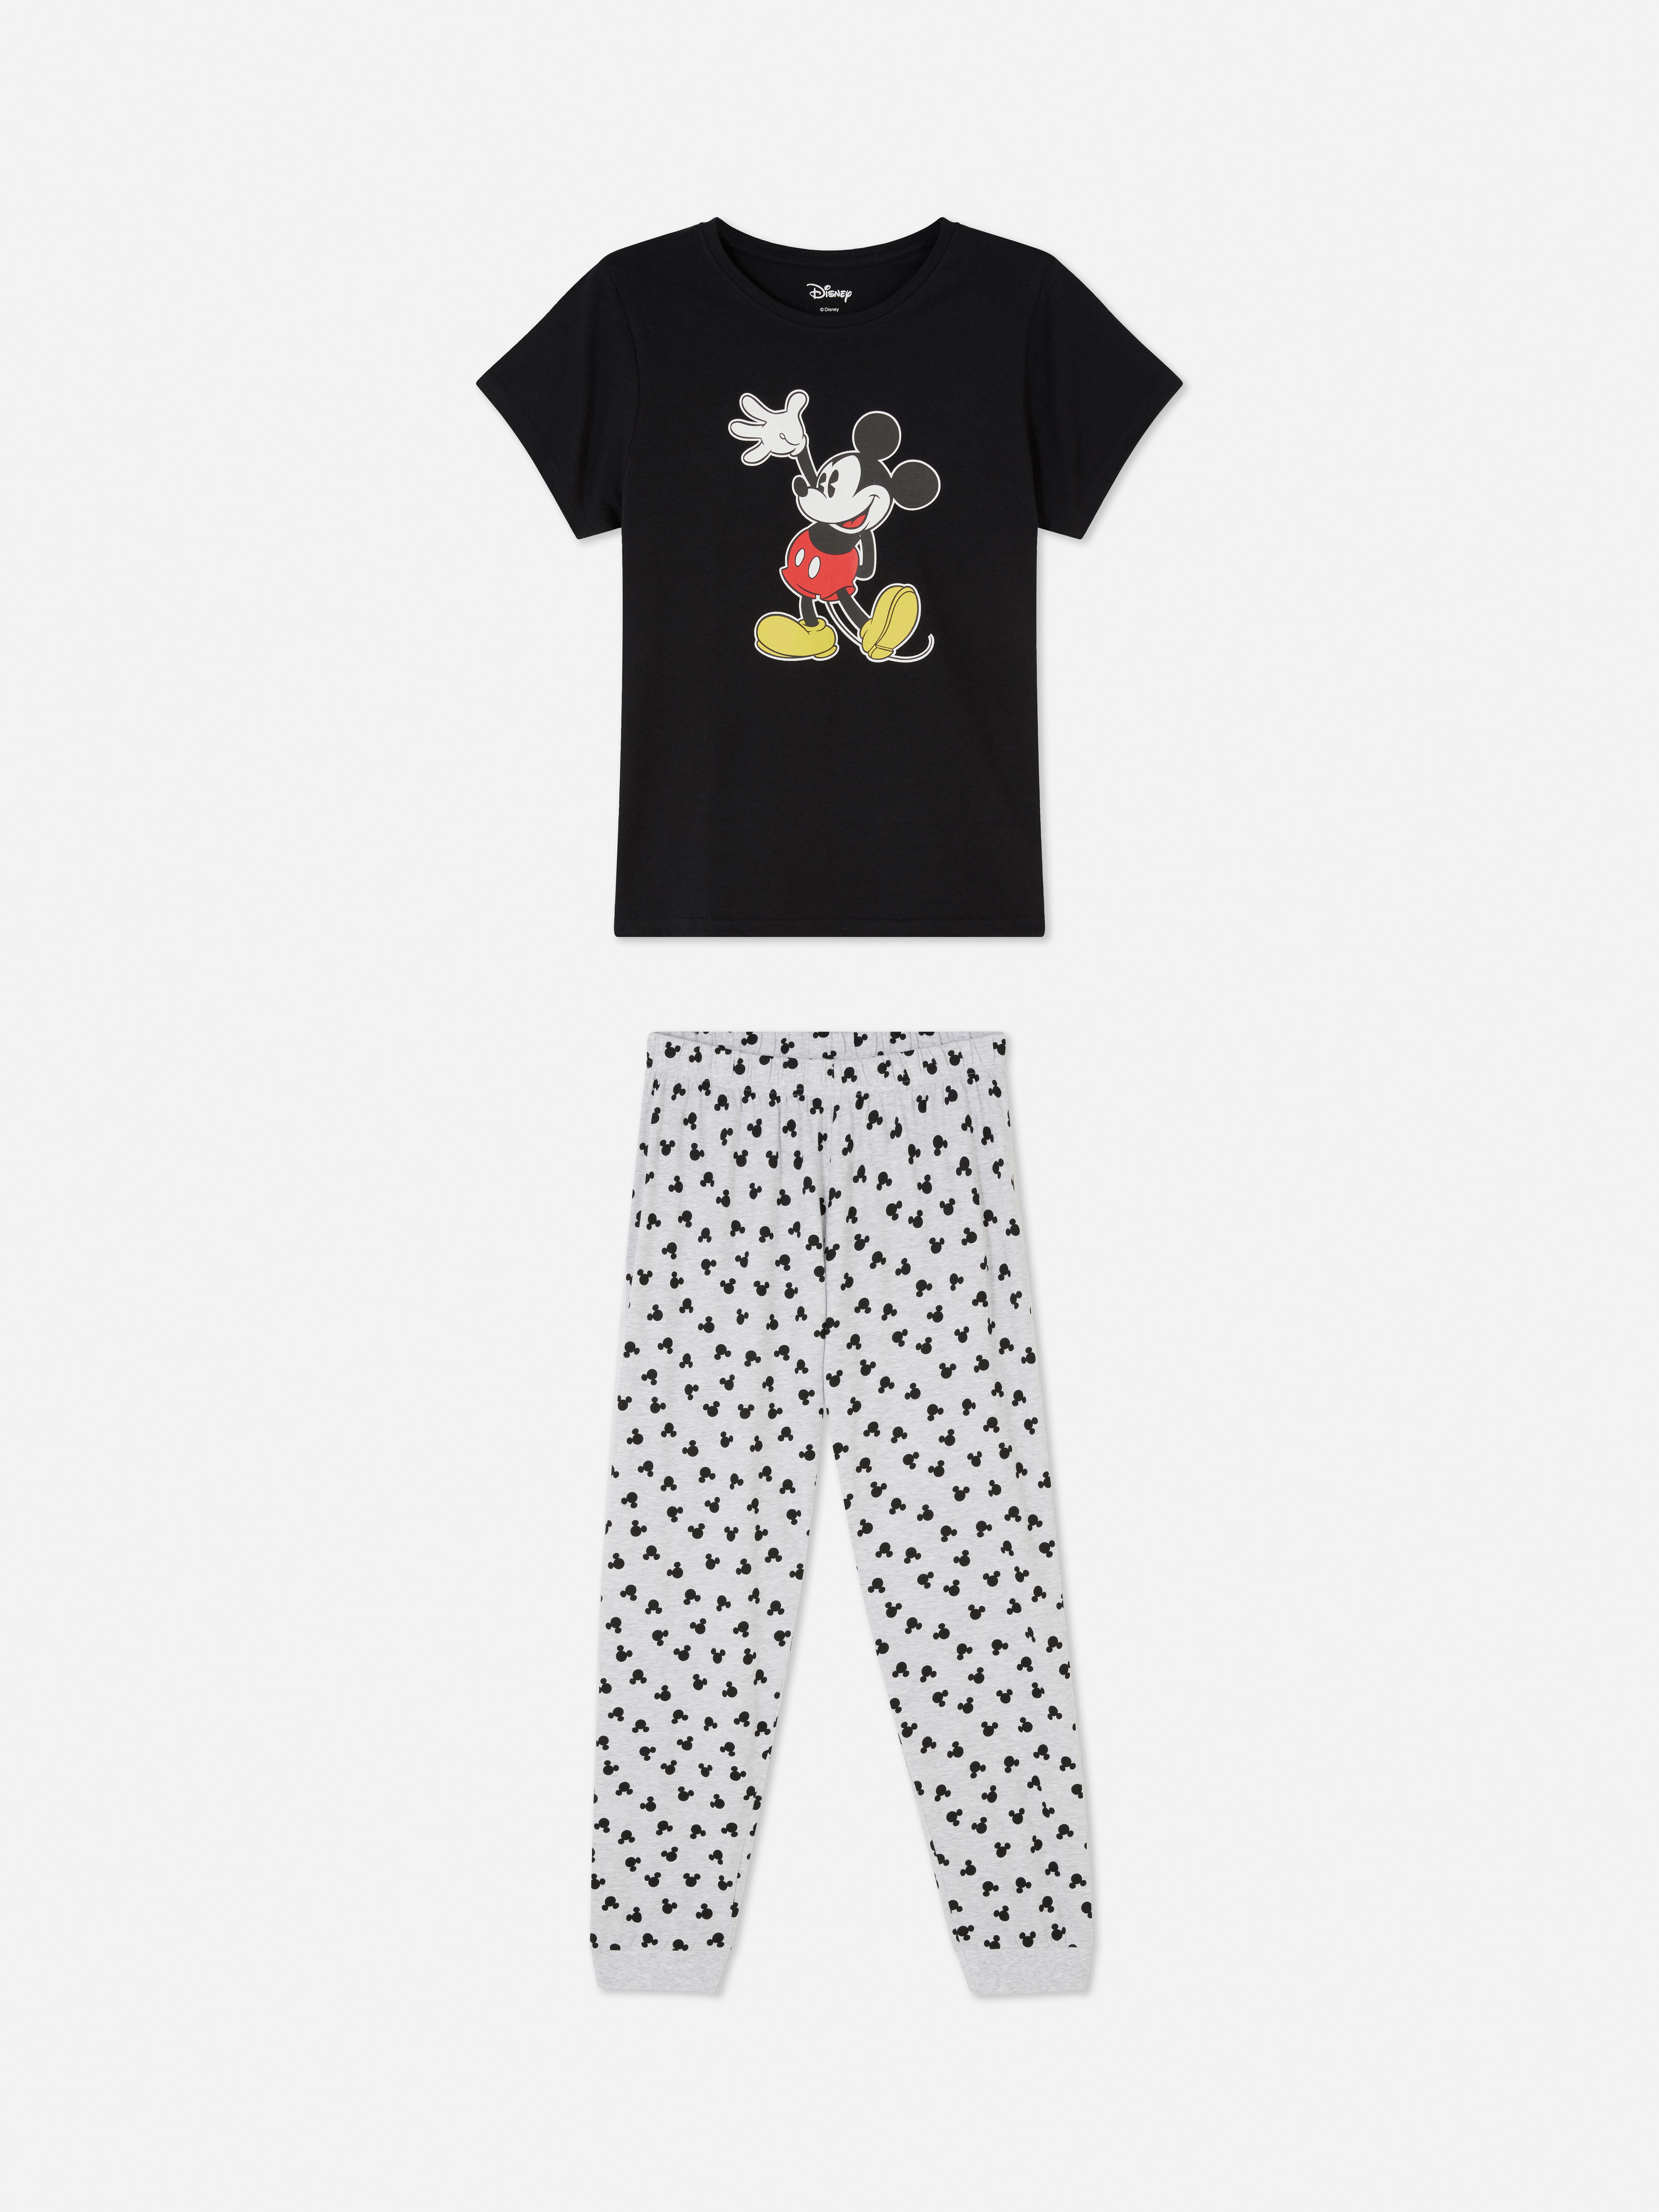 Pijama de Mickey Mouse de | Pijama para mujer | Pijamas para mujer | Ropa para mujer | línea de moda femenina | Todos los productos Primark Primark España